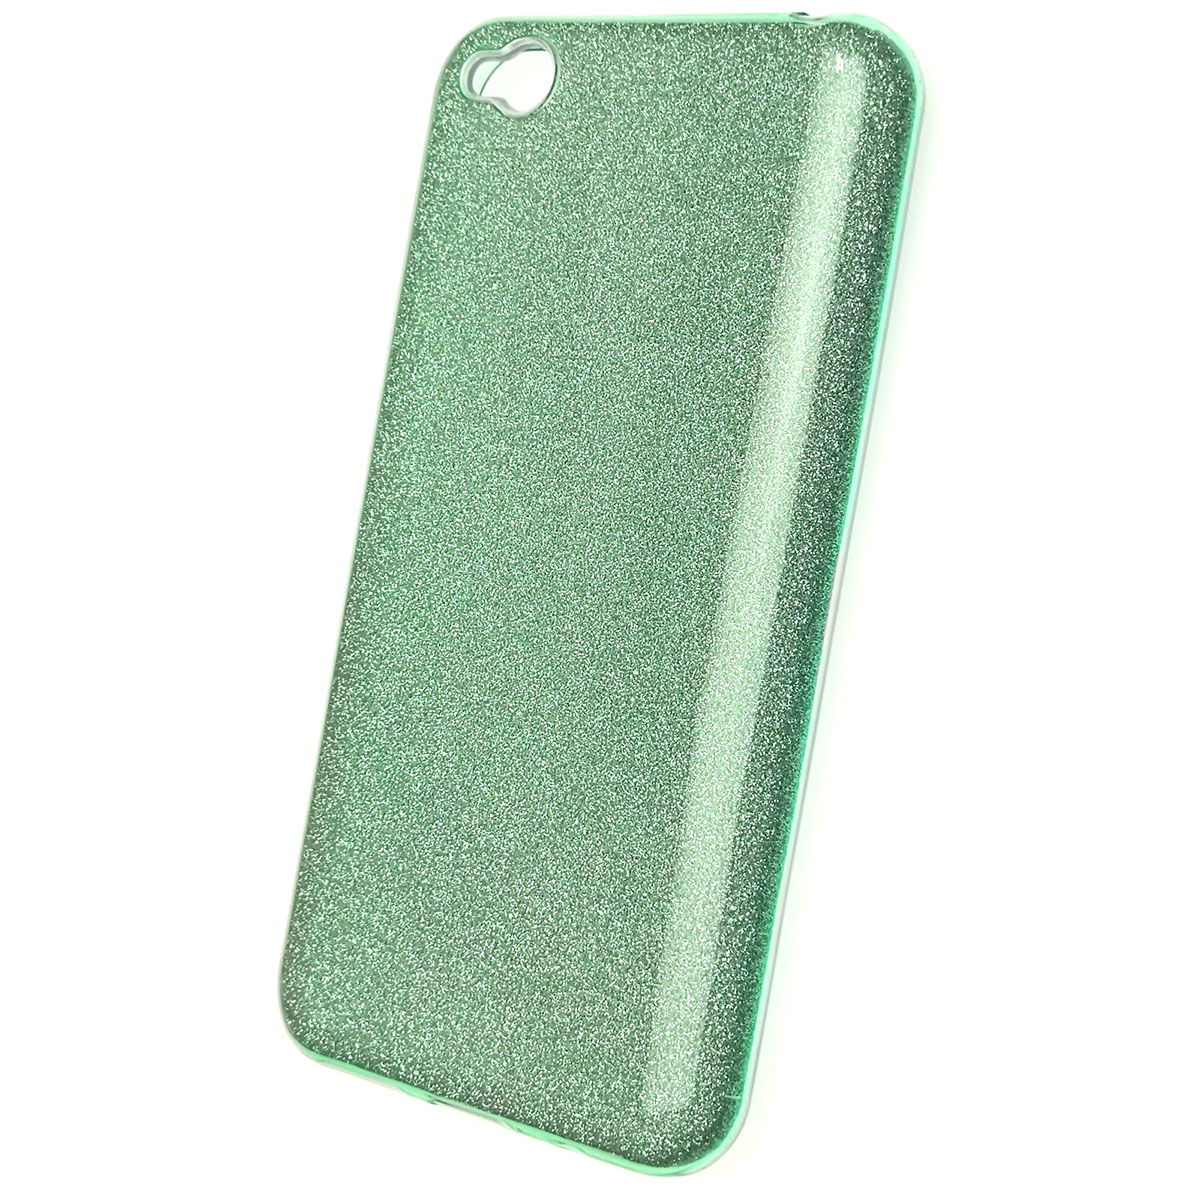 Чехол накладка Shine для XIAOMI Redmi GO, силикон, блестки, цвет зеленый